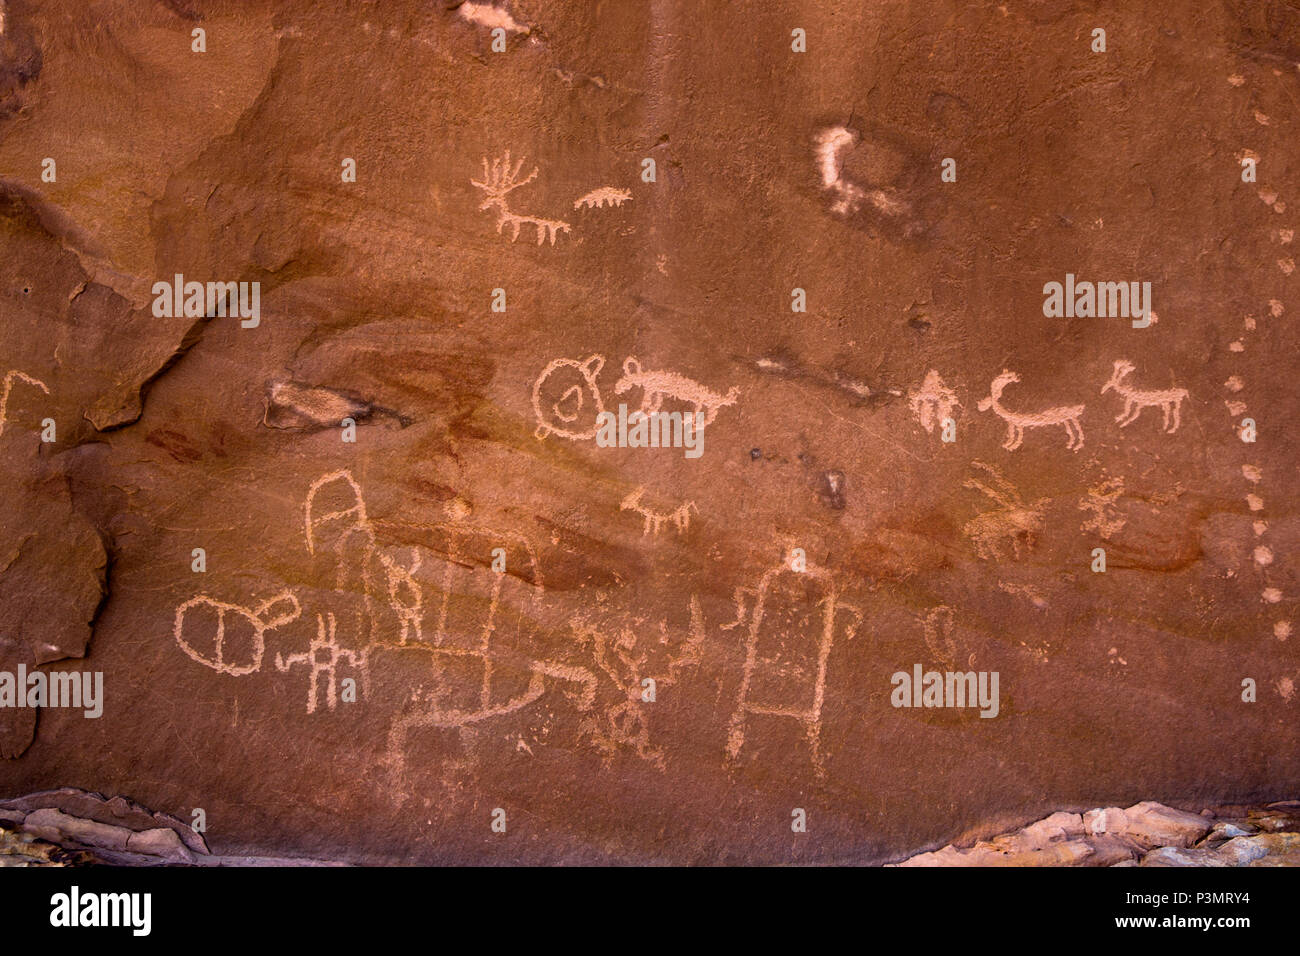 Preistorica dei Pueblo ancestrali incisioni rupestri in San Juan County nel sudest dell'Utah, Stati Uniti Foto Stock